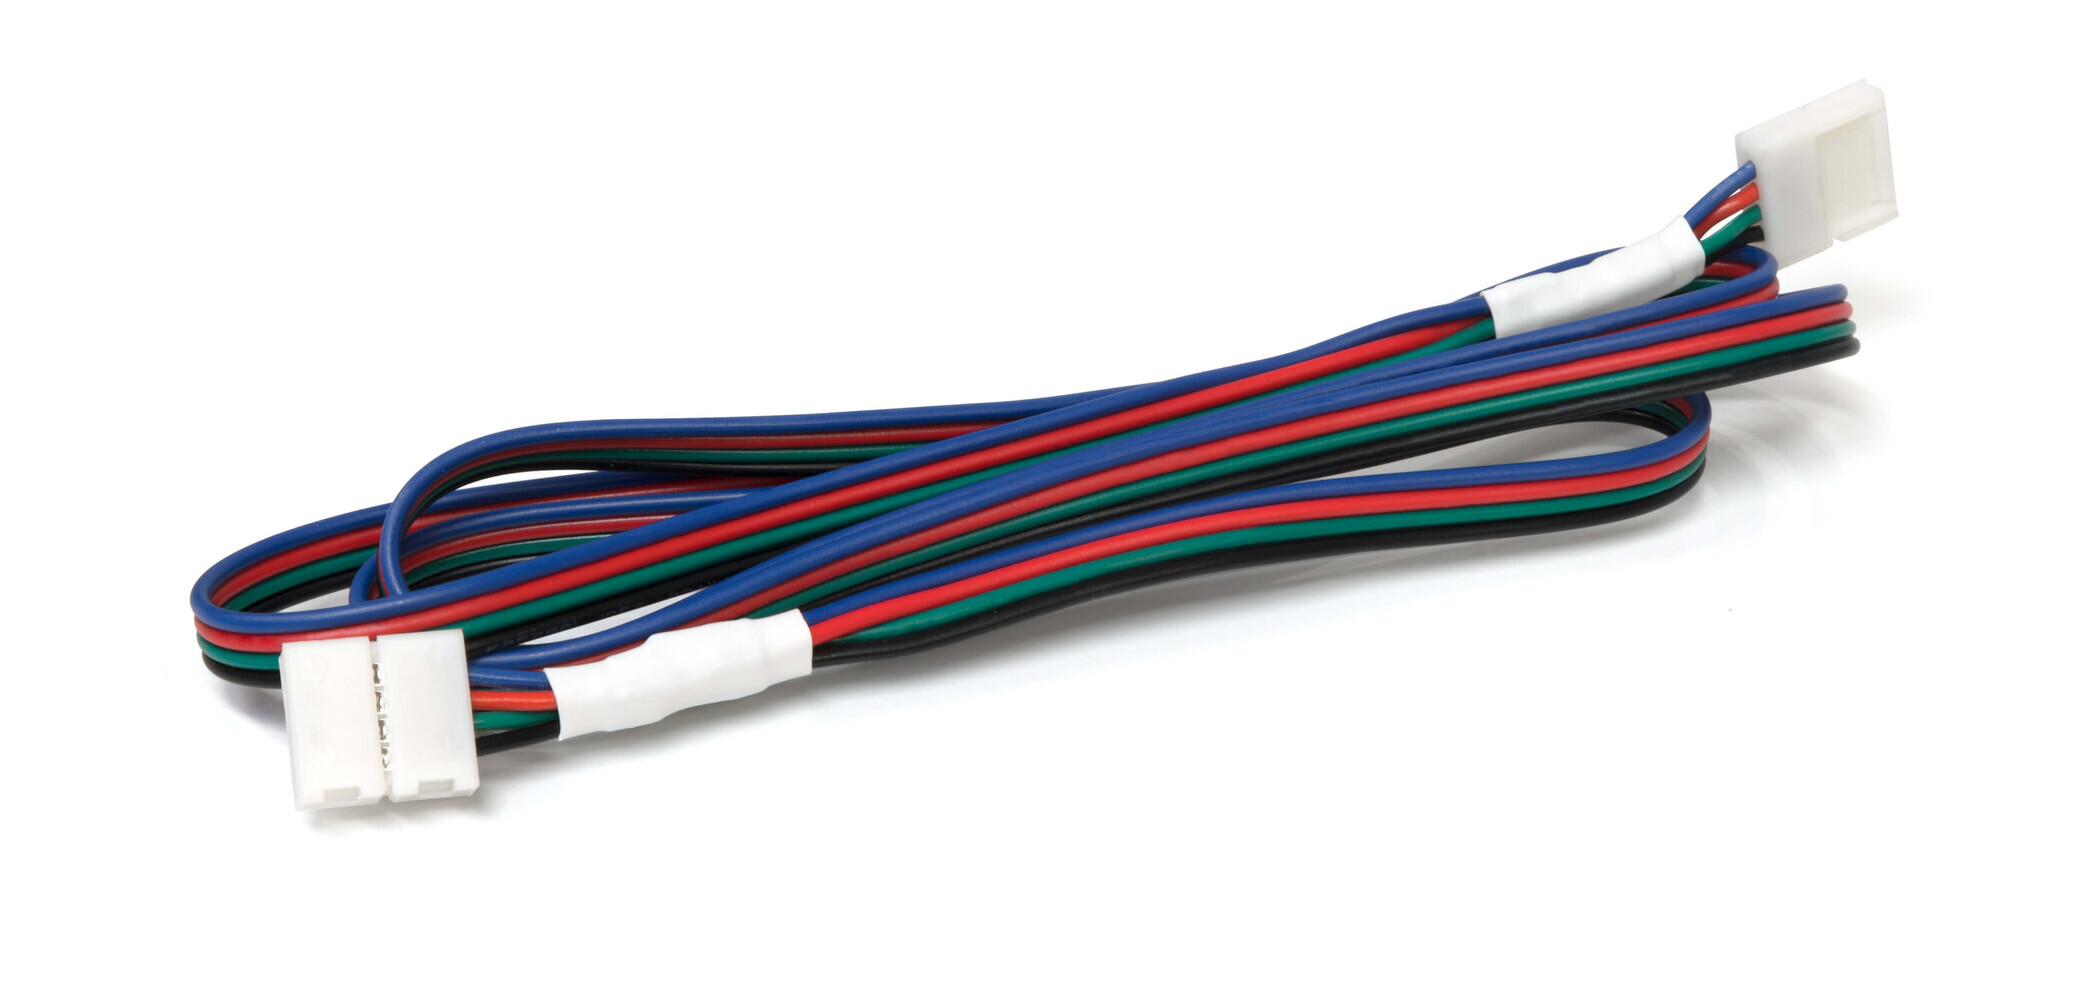 Hochwertiges 4-pol Verbindungskabel mit Schnellverbinder für RGB LED Streifen von LED Universum